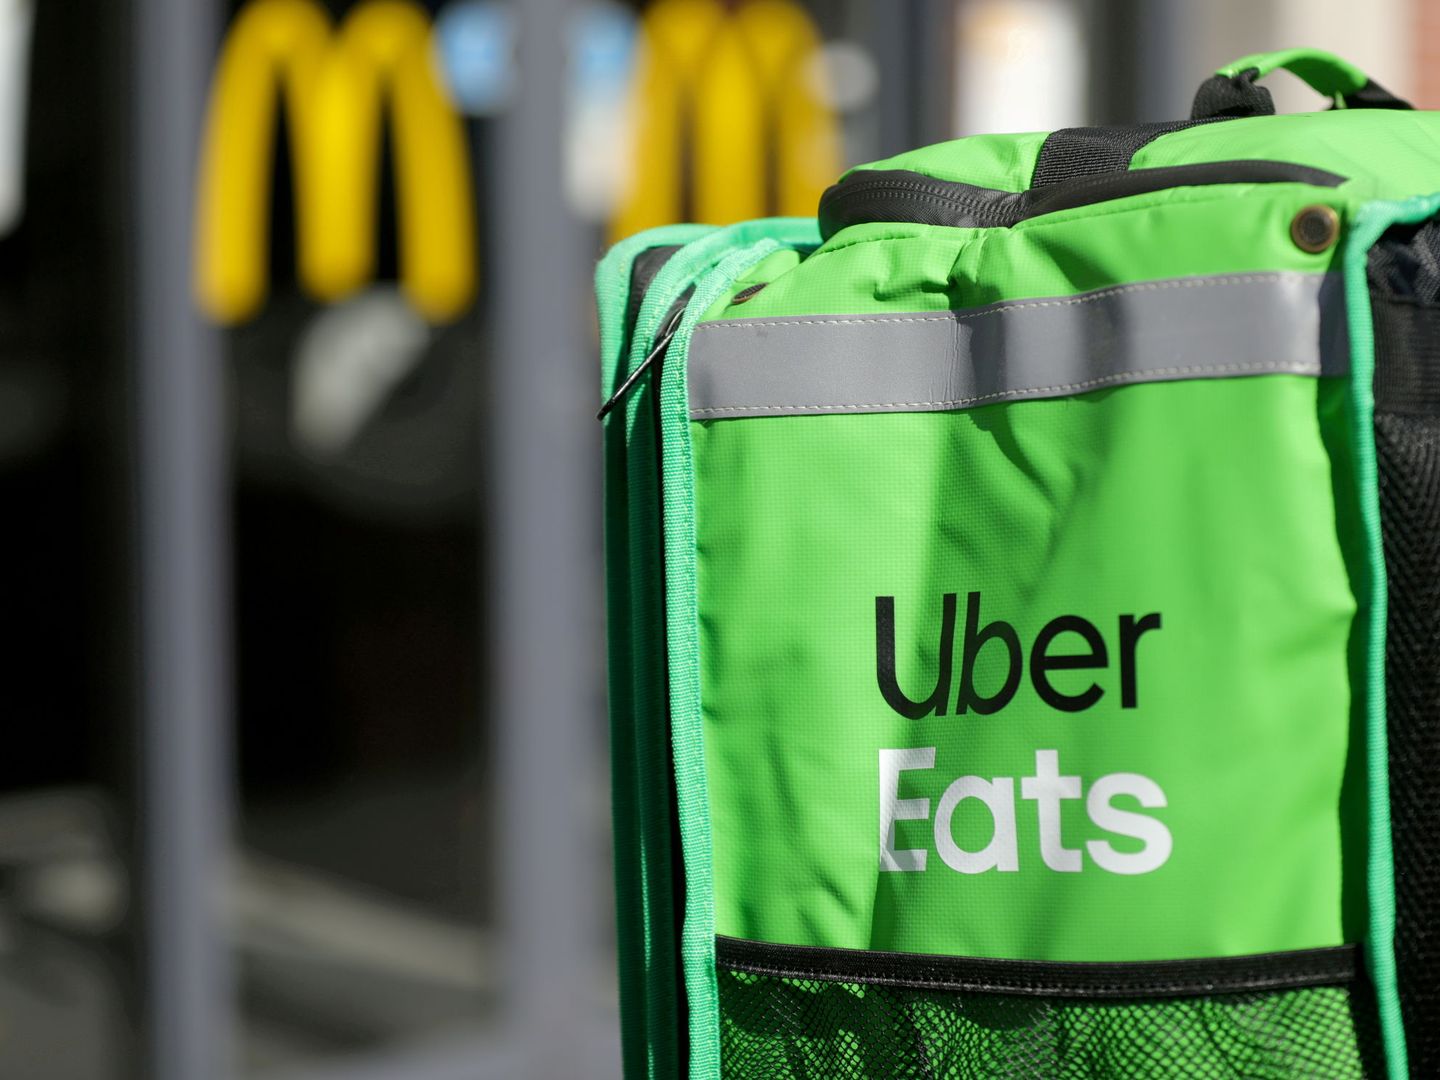 Caja de reparto de Uber Eats. (Reuters)